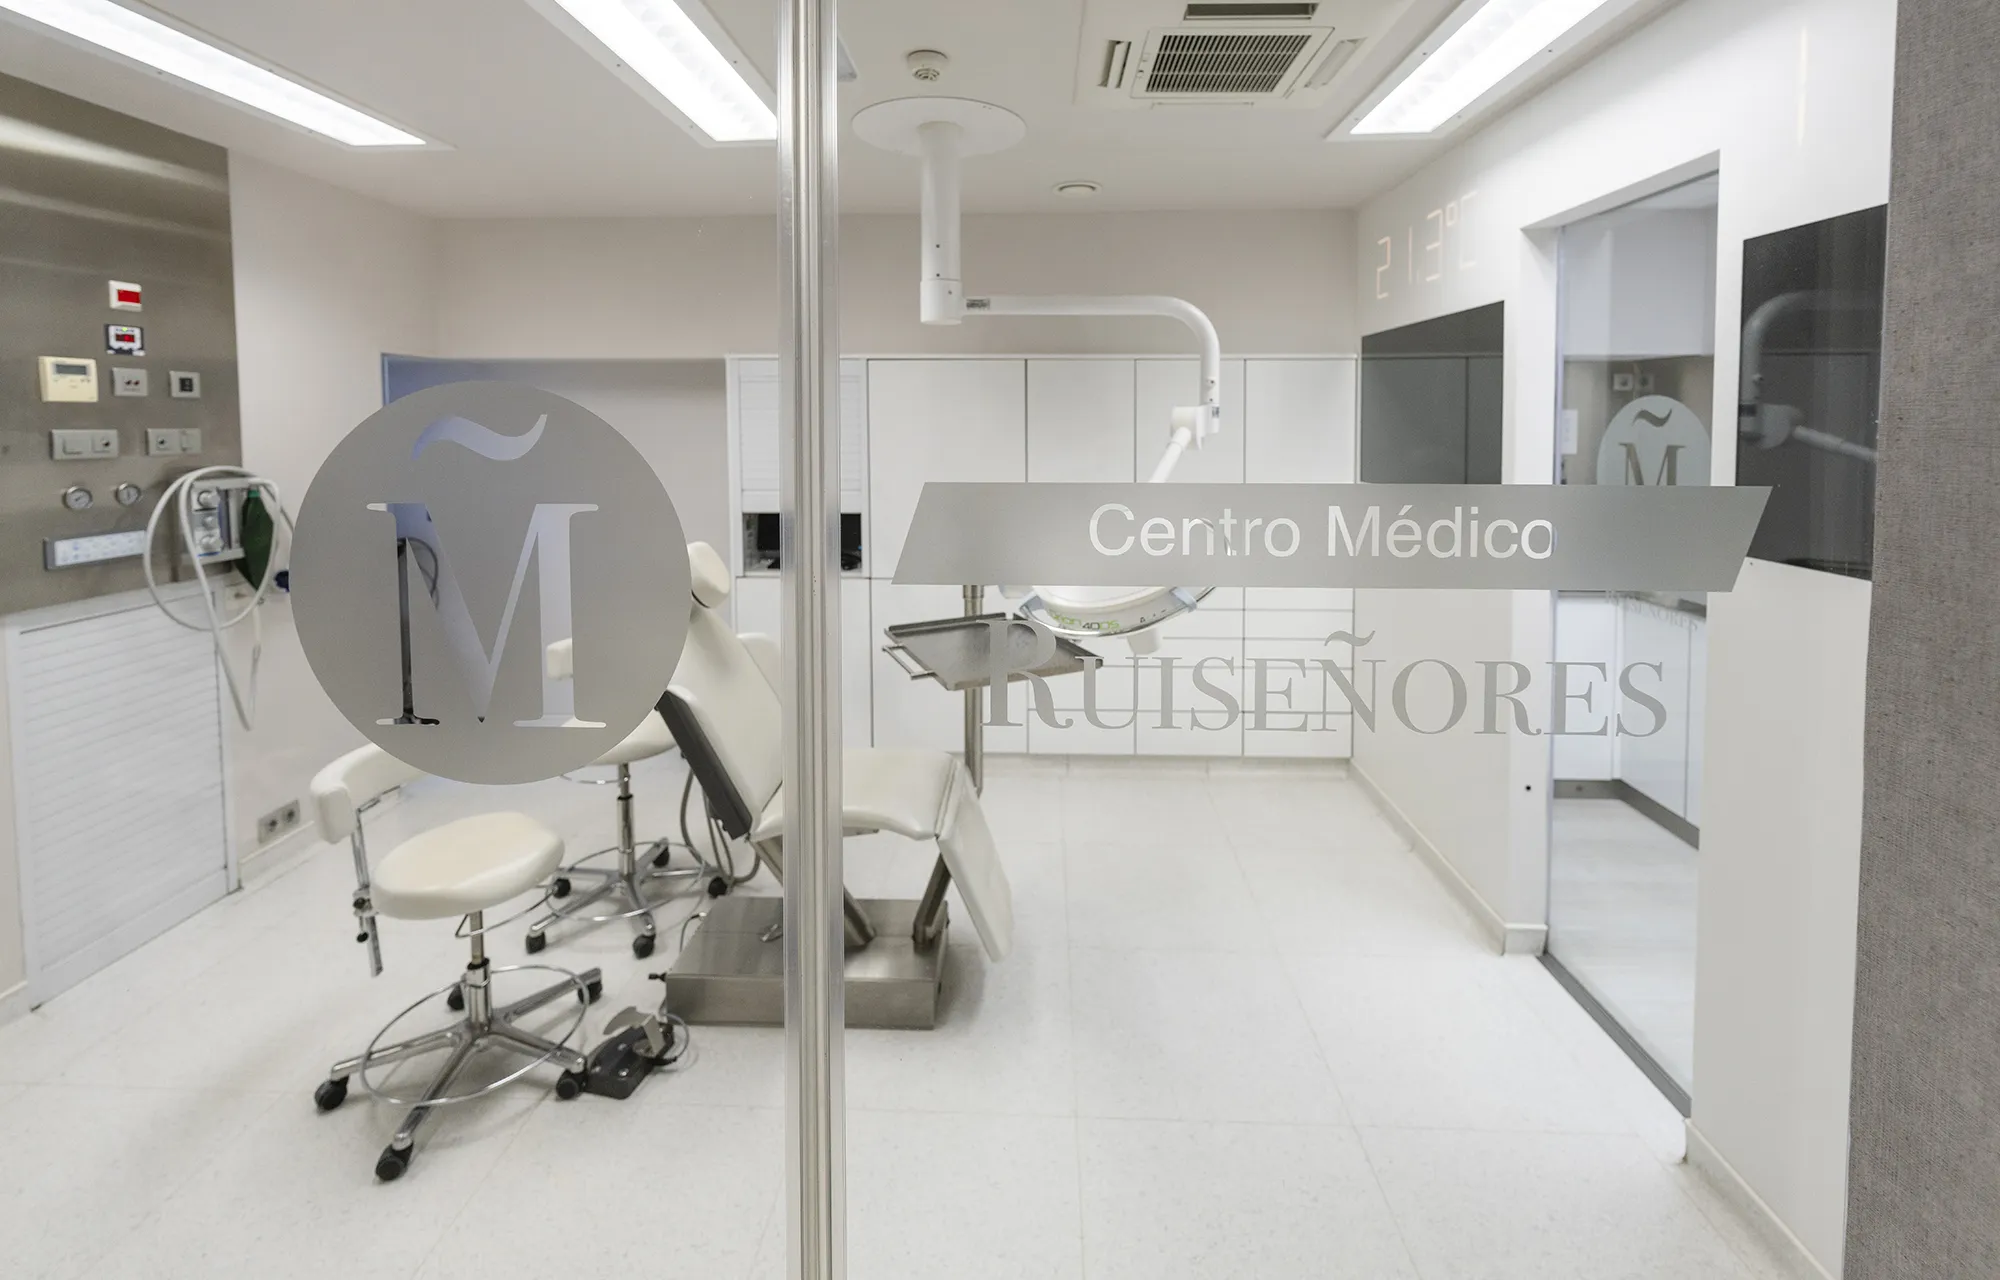 Sala de Cirugía del Centro Médico Ruiseñores